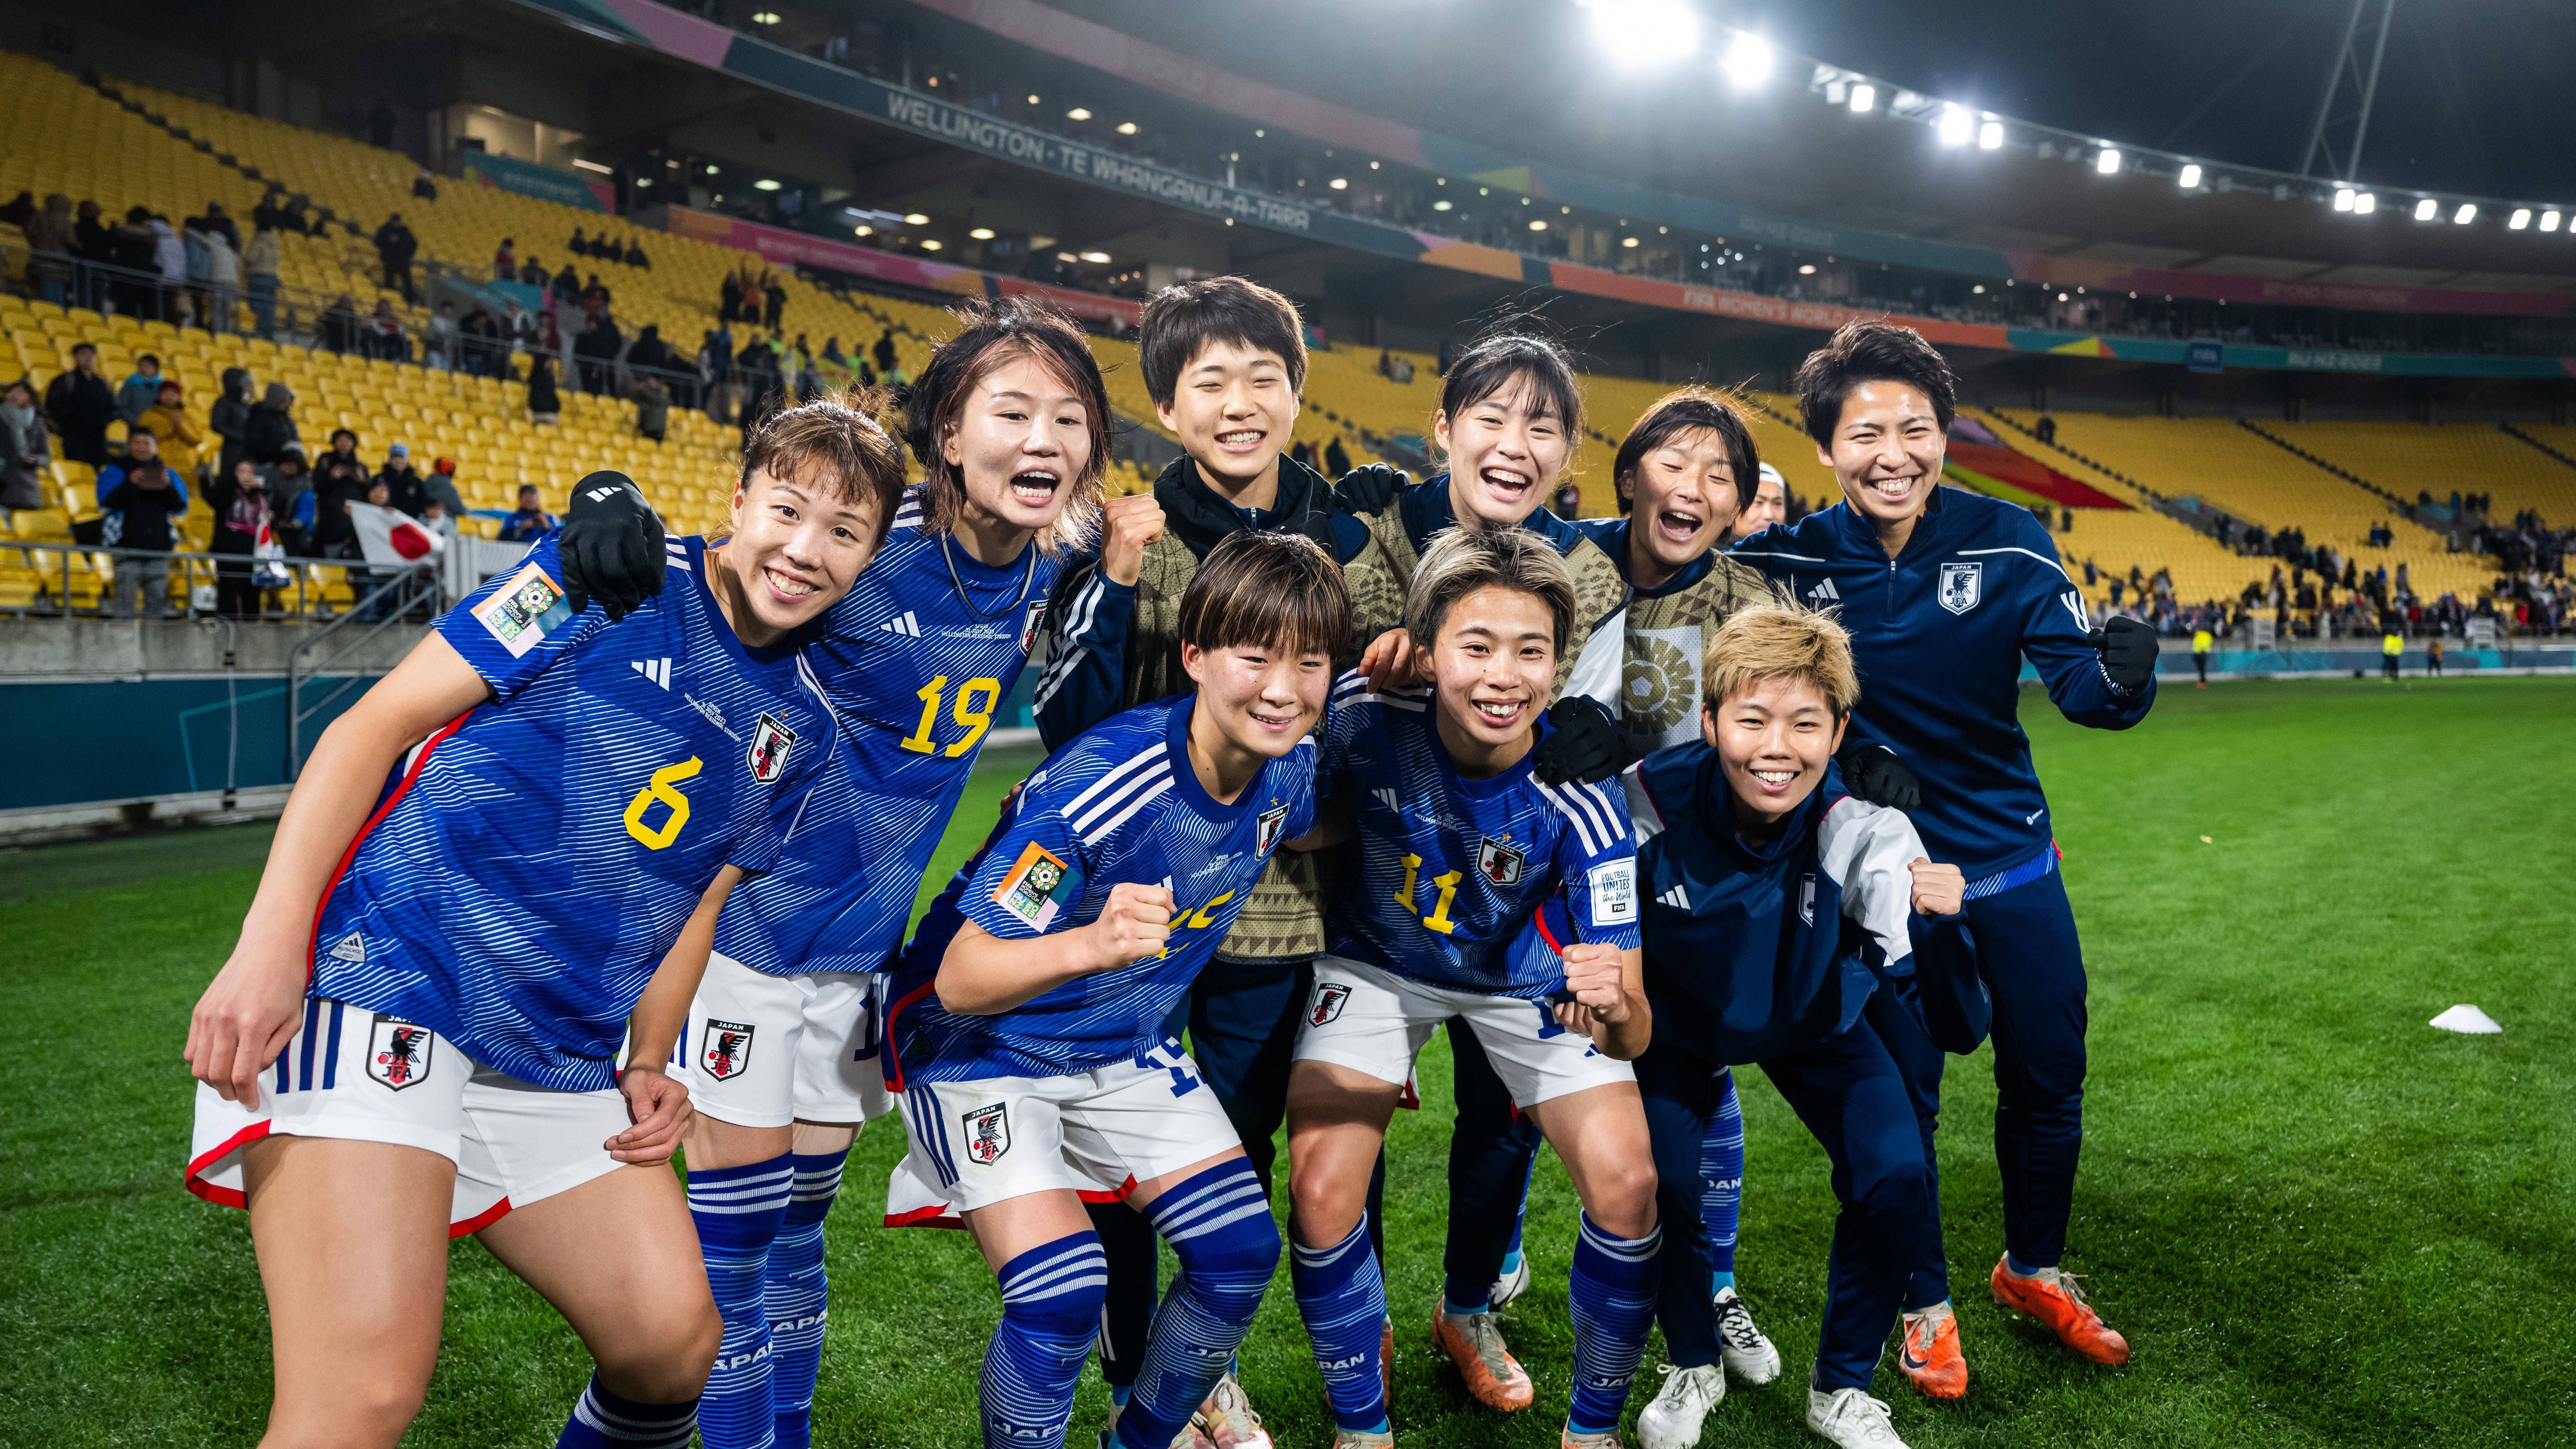 <strong>Gewinner: Japan<br></strong>Die Japanerinnen spielen nämlich einen unglaublich ansehnlichen und kompletten Fußball. Defensiv diszipliniert und stabil, stark im Umschaltverhalten und auch in Ballbesitz mit klugen Ideen. Nur wenige hatten Japan in diesem Jahr auf dem Zettel, doch nach dieser Gruppenphase zählen sie zweifelsohne zu den Top-Favoriten.